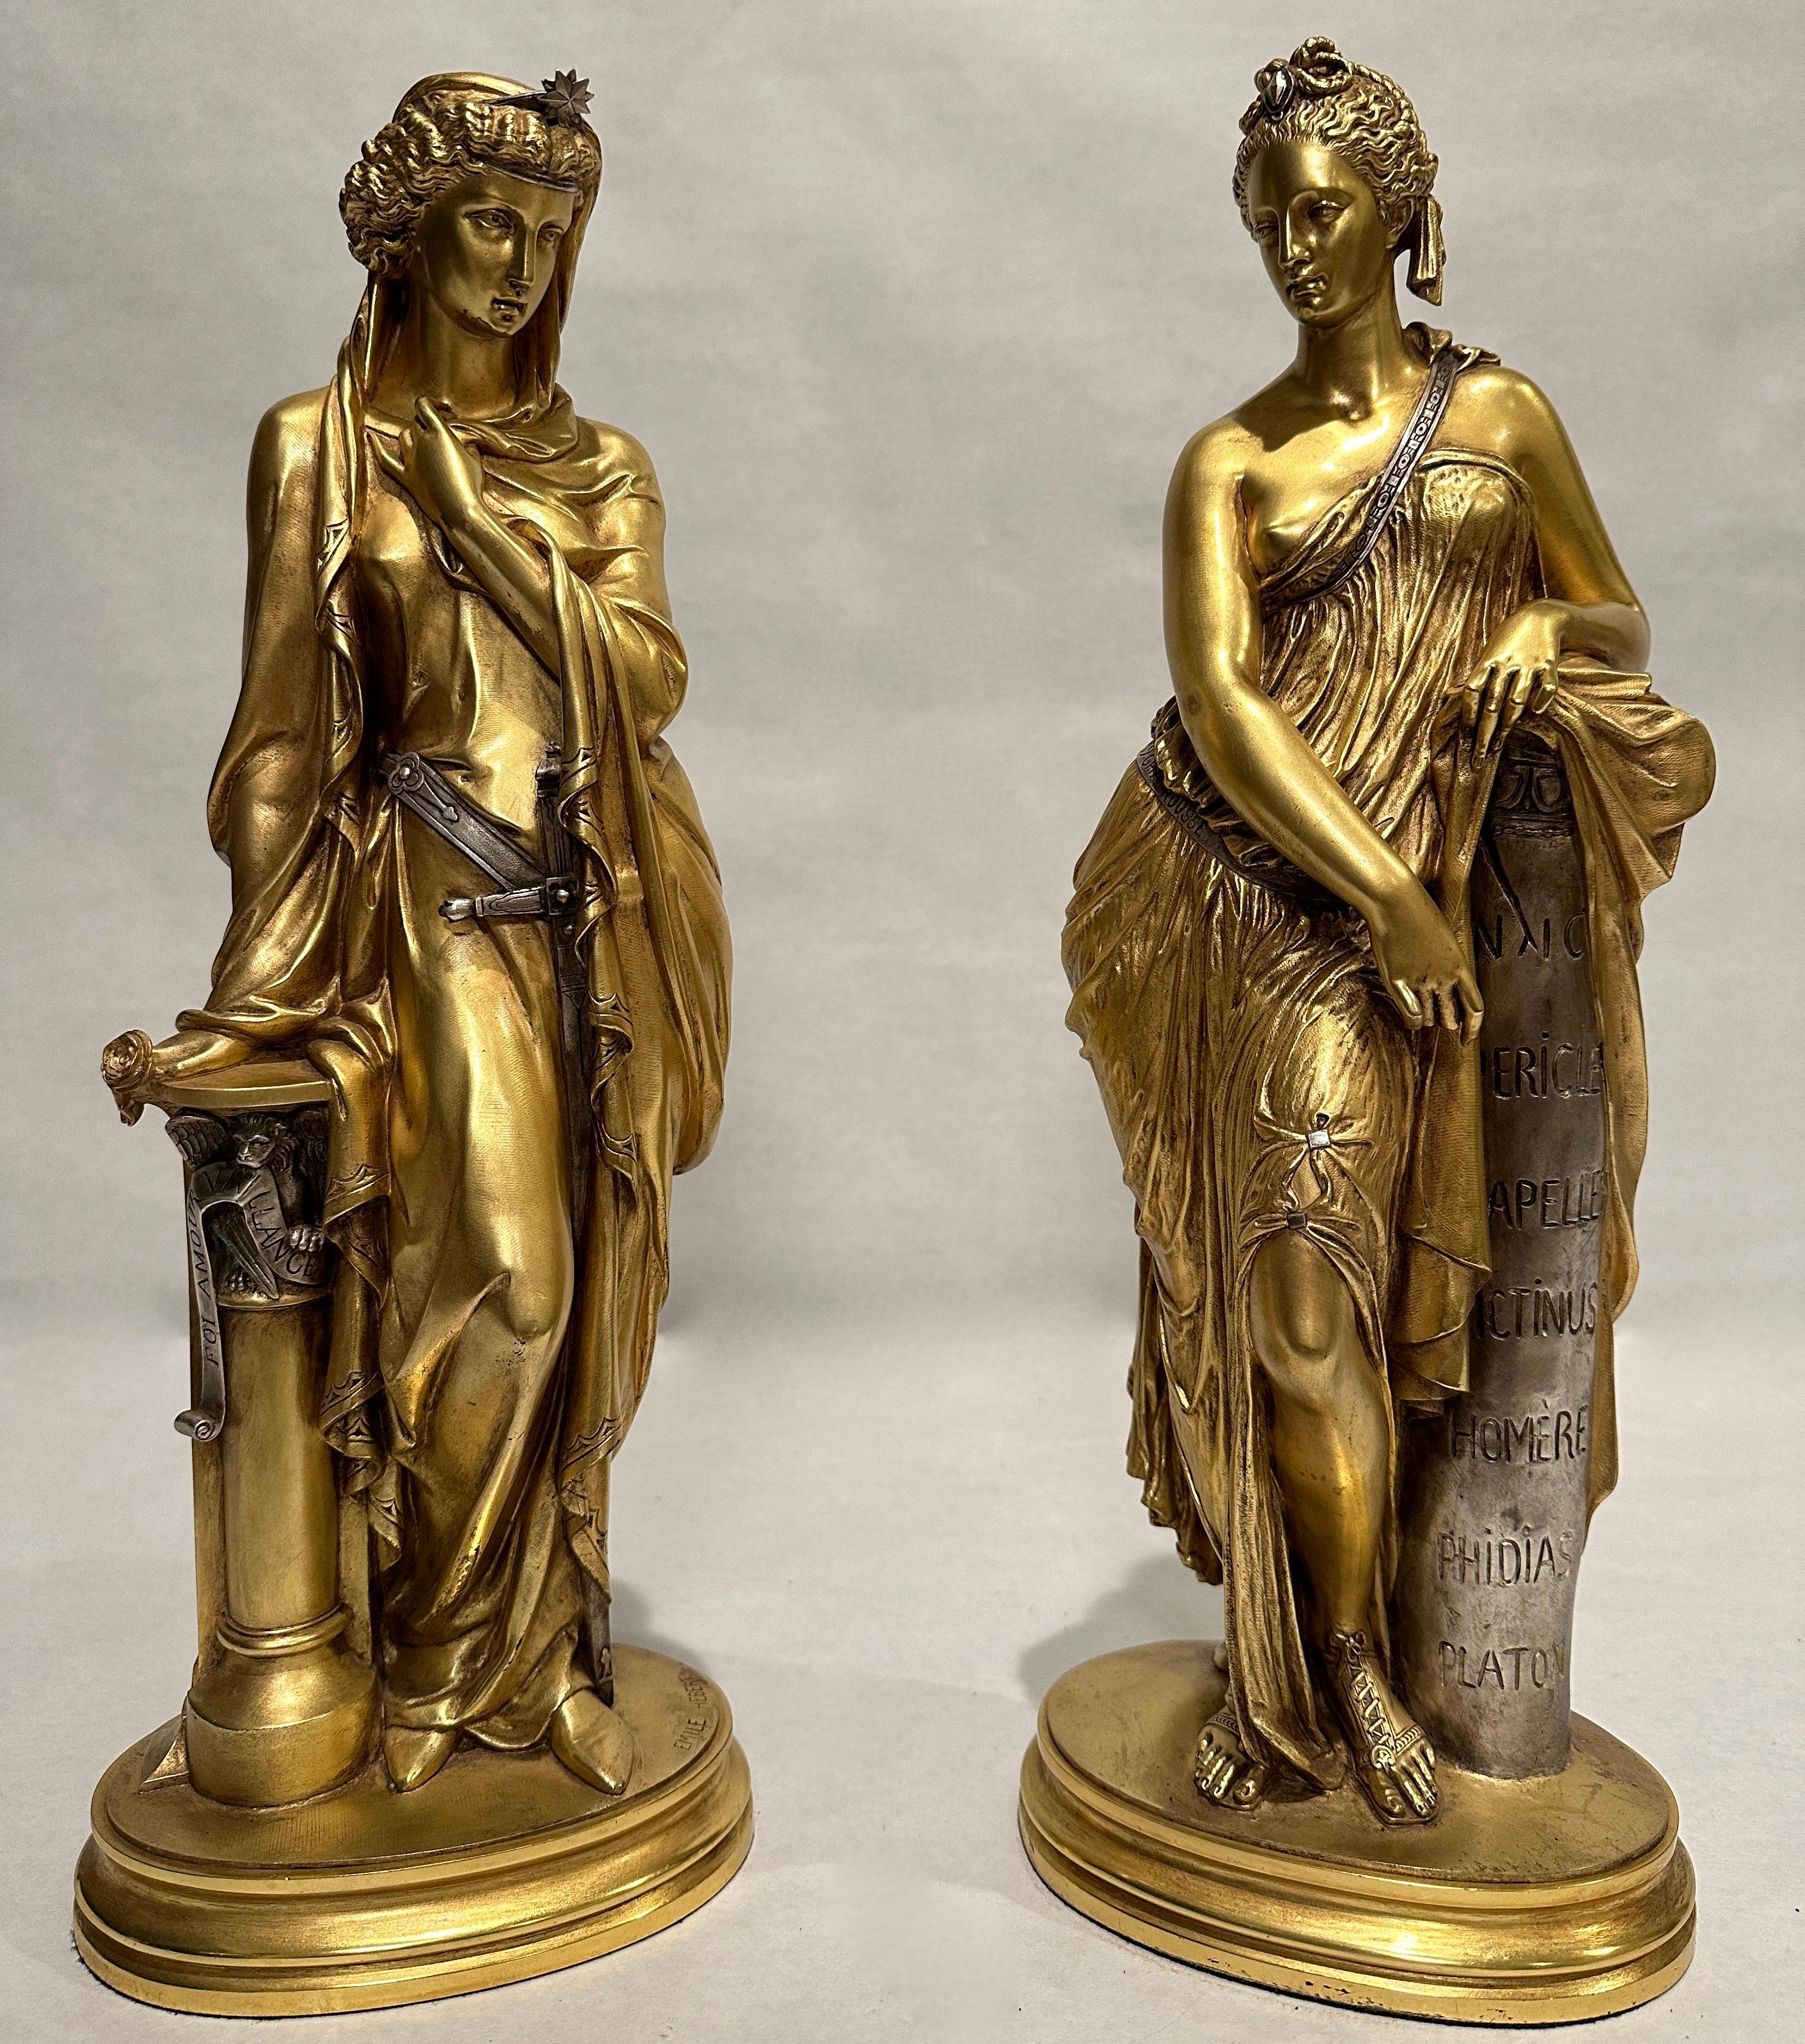 Seltenes Paar von Bronzeskulpturen von Emile Herbért. Hochwertige versilberte und vergoldete Bronzefiguren einer Kriegerin und einer Dichterin, die entsprechend mit militärischer Kleidung und poetischen Worten gekleidet sind. Signiert und mit der